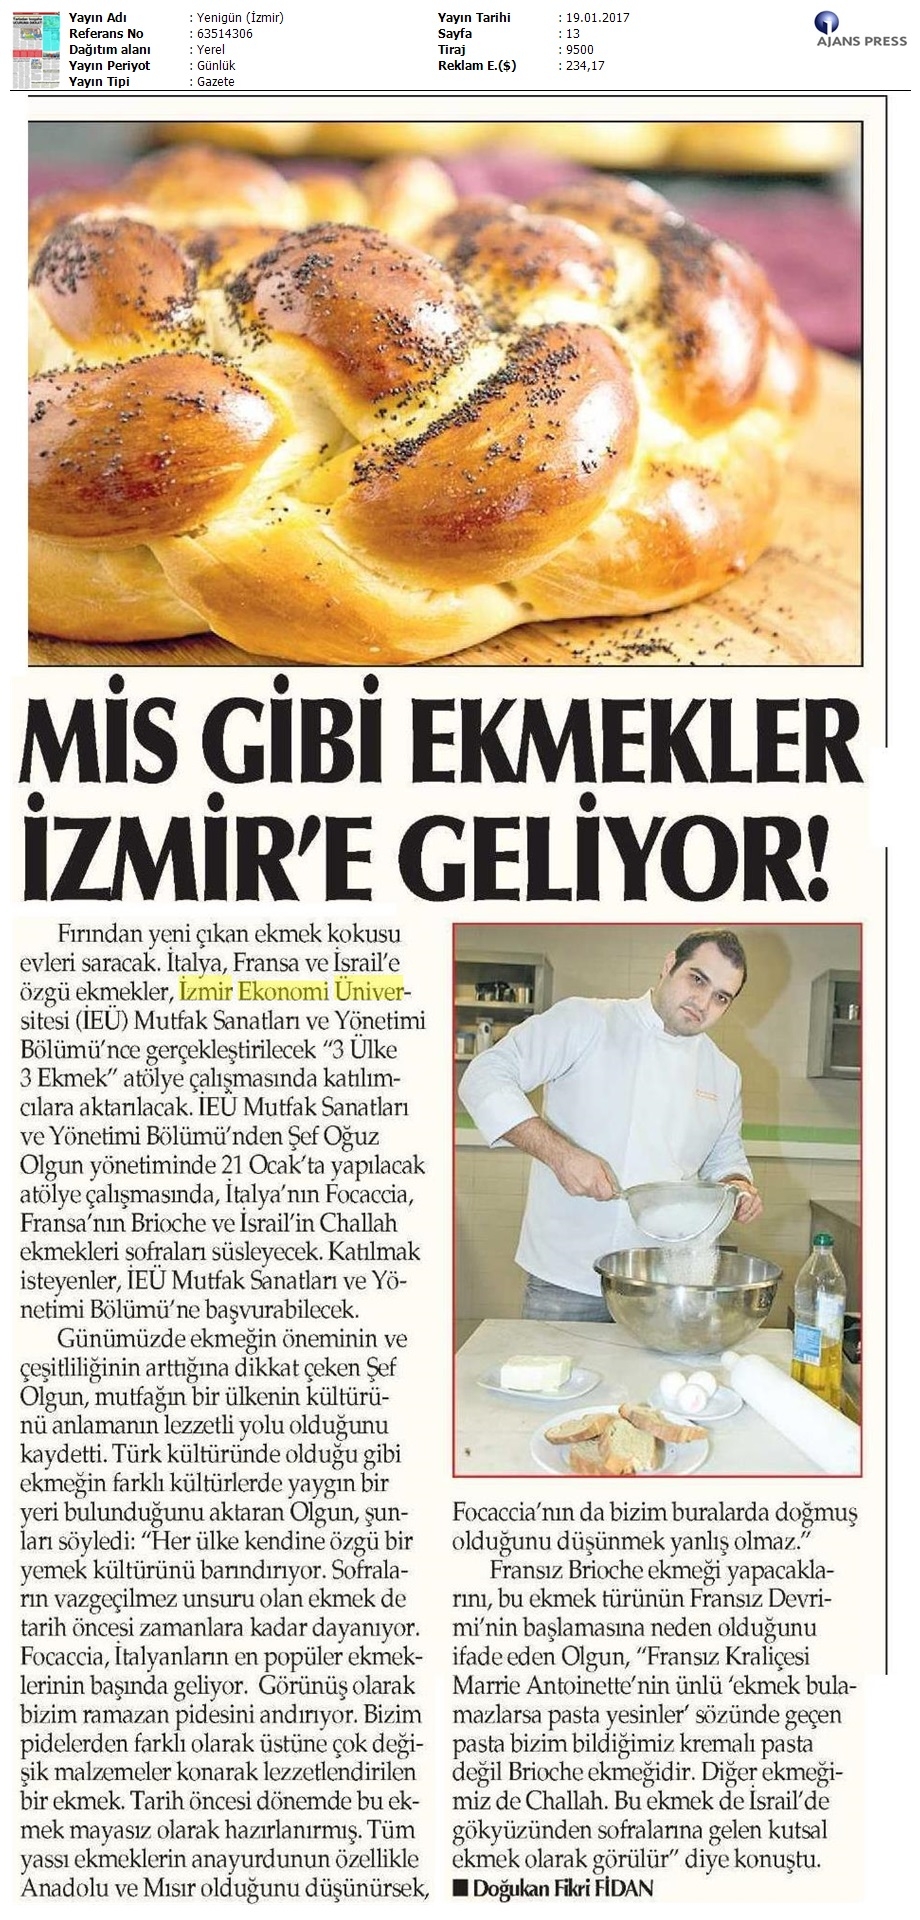 Mis gibi ekmekler İzmir'e geliyor